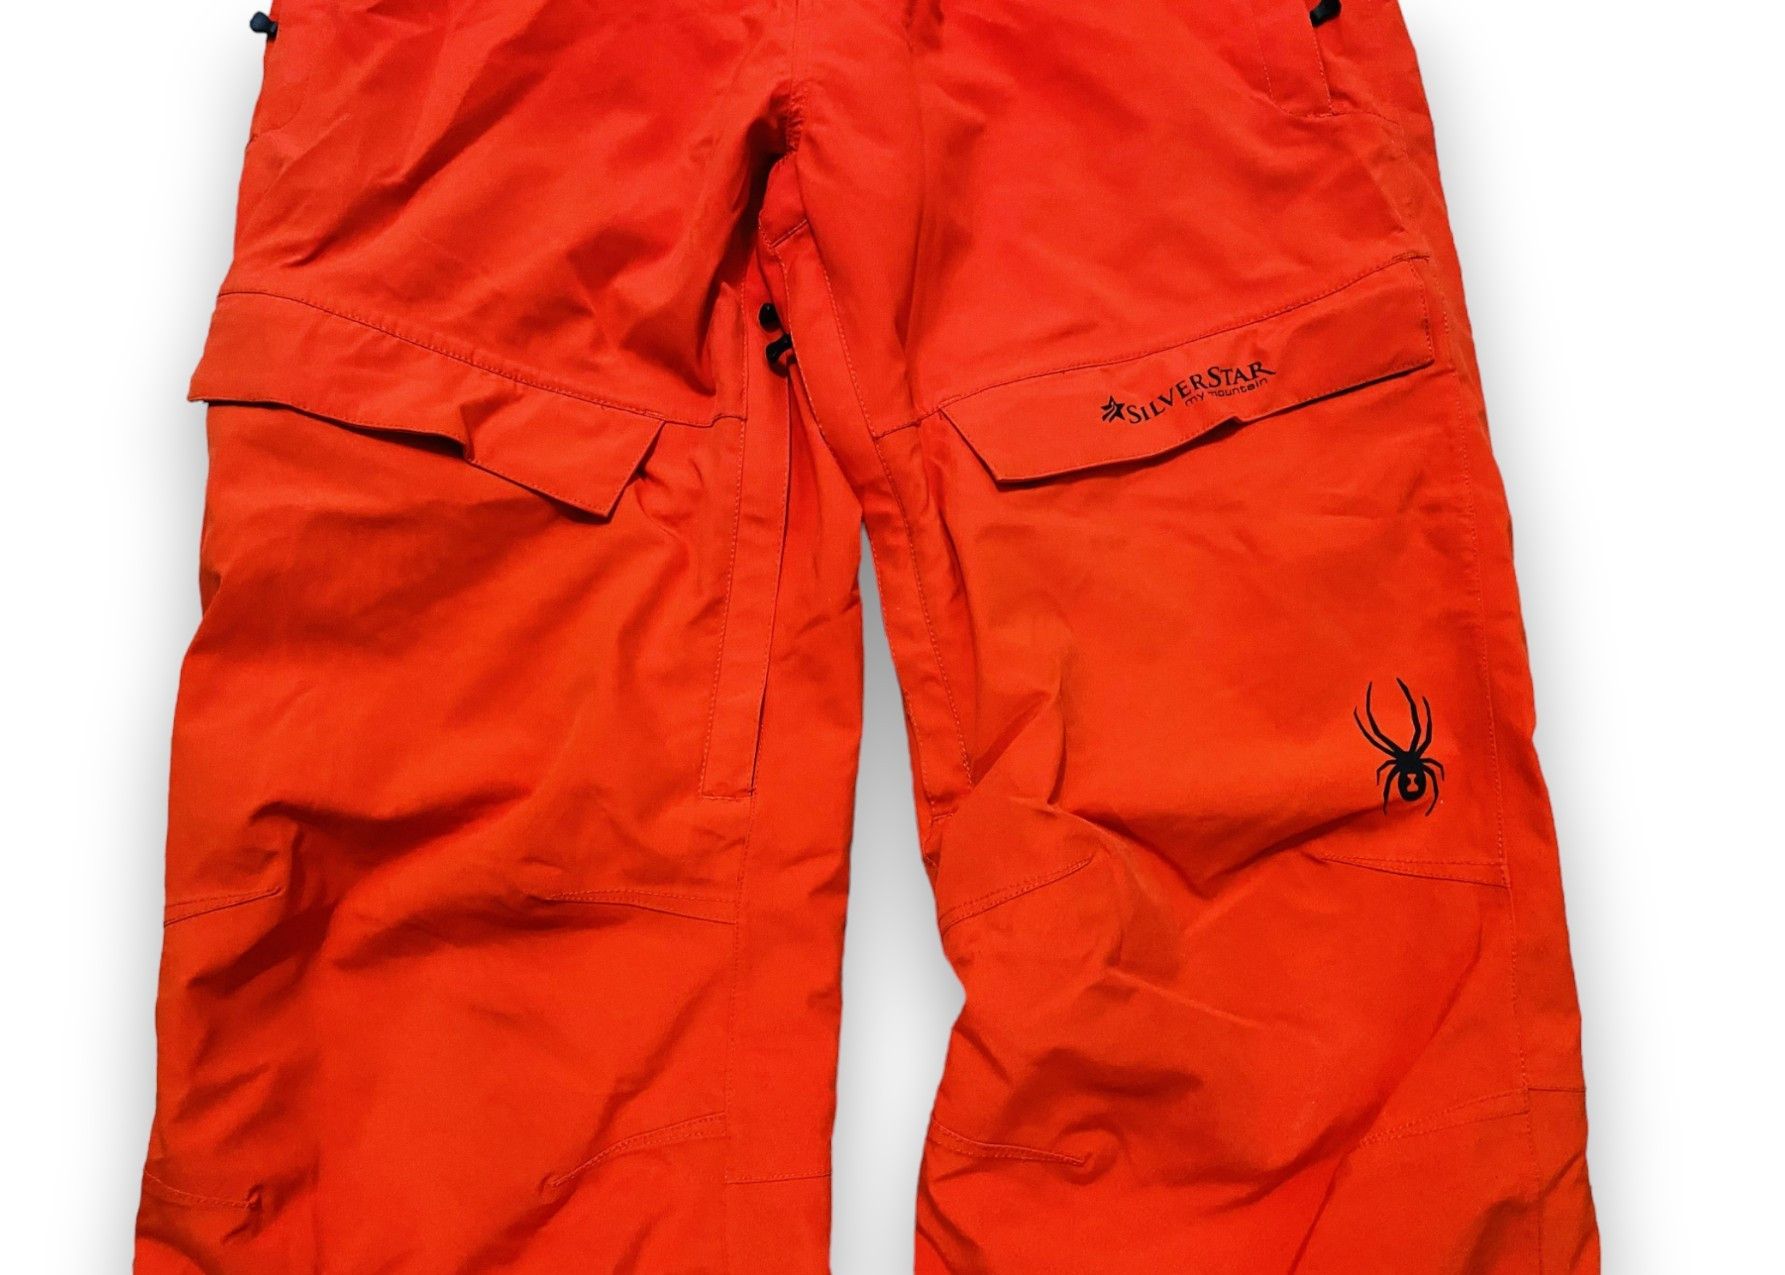 Outdoor Life - Spyder Pants Snowboarding Ski Outdoor Orange Men's M/L - 6